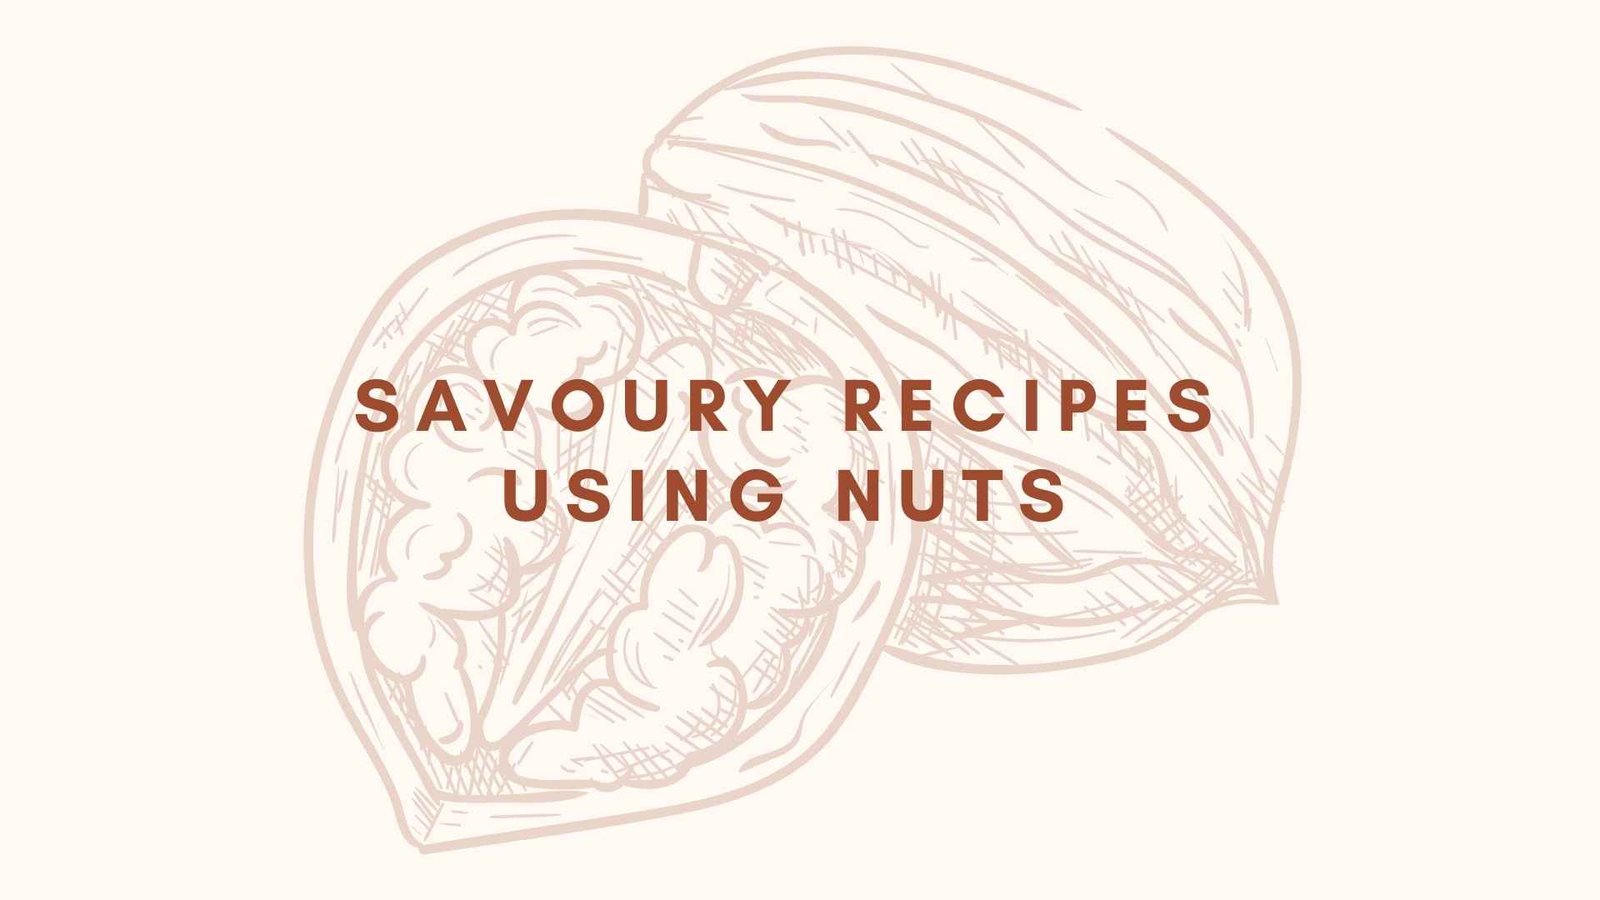 Savoury Recipes Using Nuts